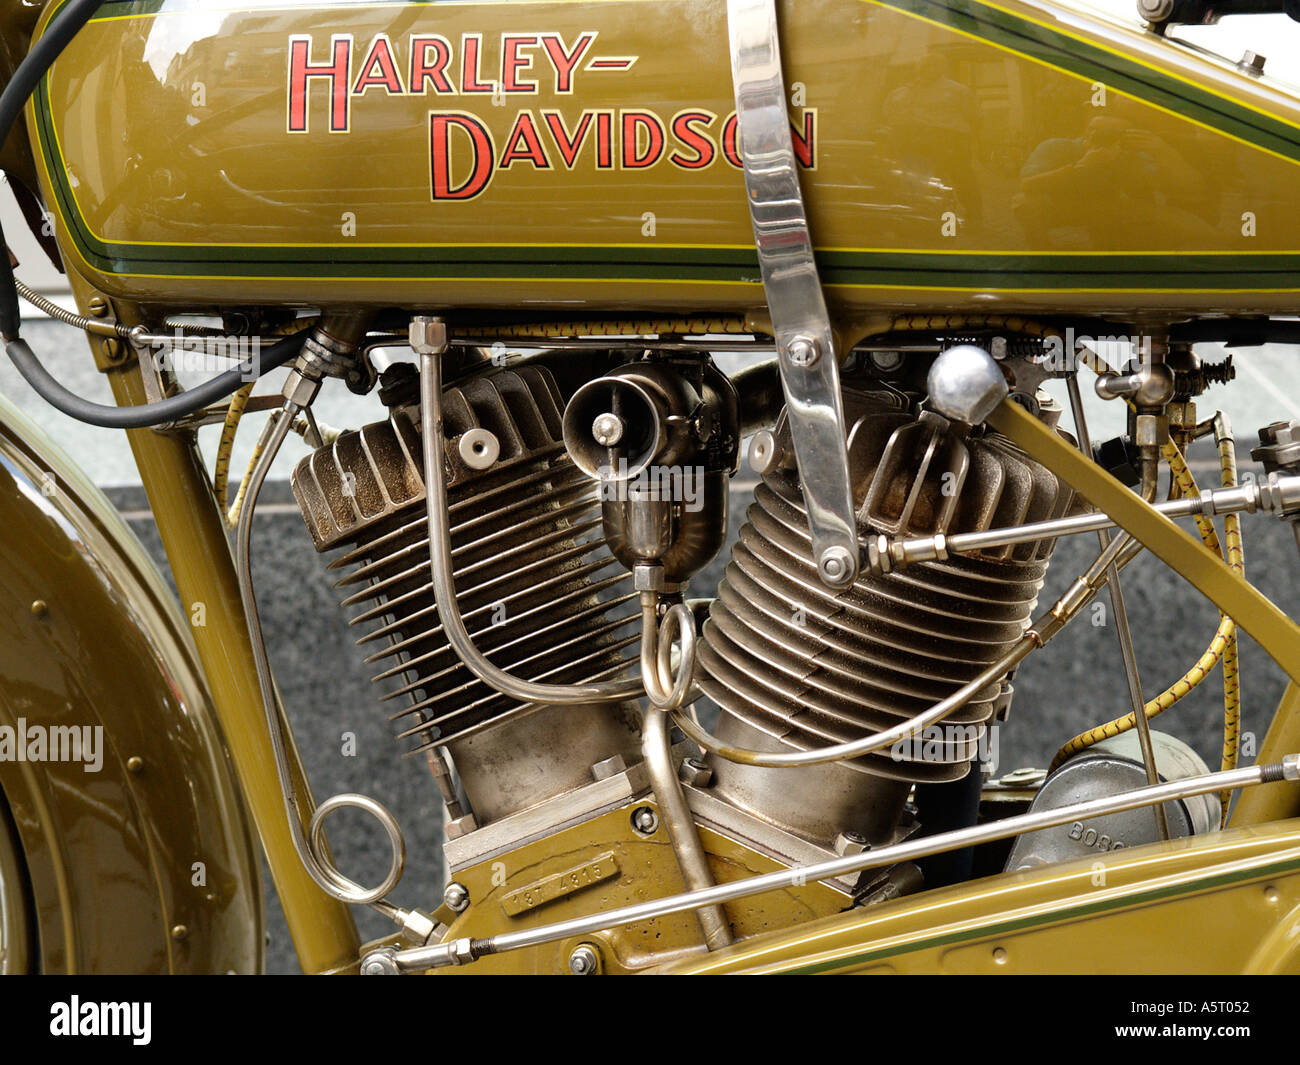 Détail d'une très vieille moto Harley Davidson classique montrant le fameux v twin engine layout Banque D'Images